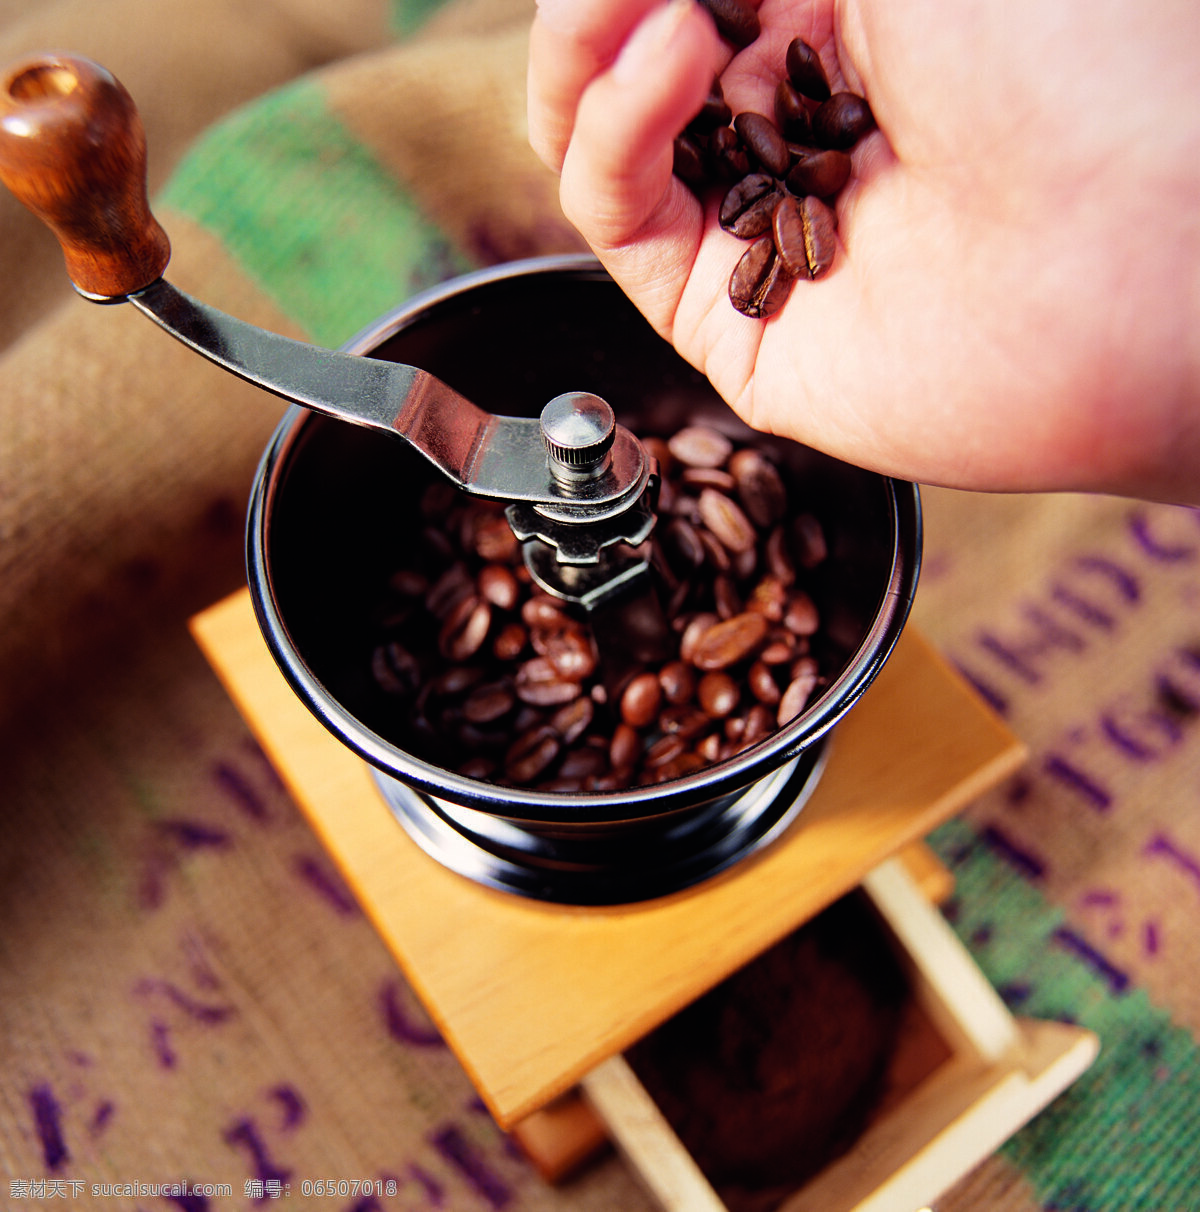 正在 研磨 咖啡 时 研磨机 咖啡豆 颗粒 手捧着 加工 特写 摄影图 高清图片 咖啡图片 餐饮美食